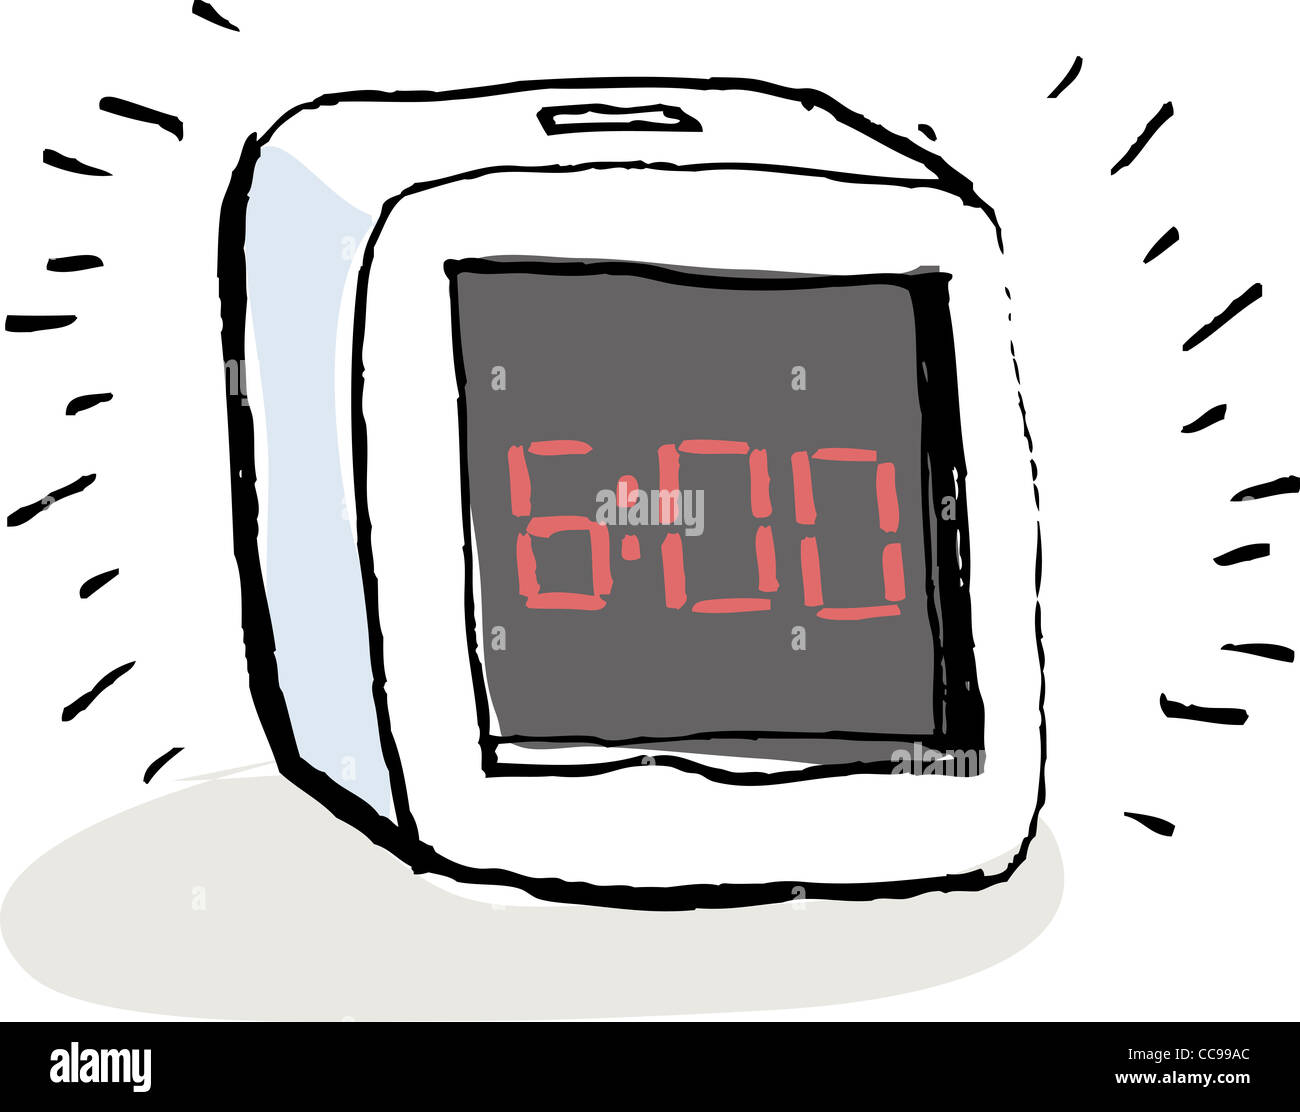 Suena una alarma a las 6:00 Fotografía de stock - Alamy